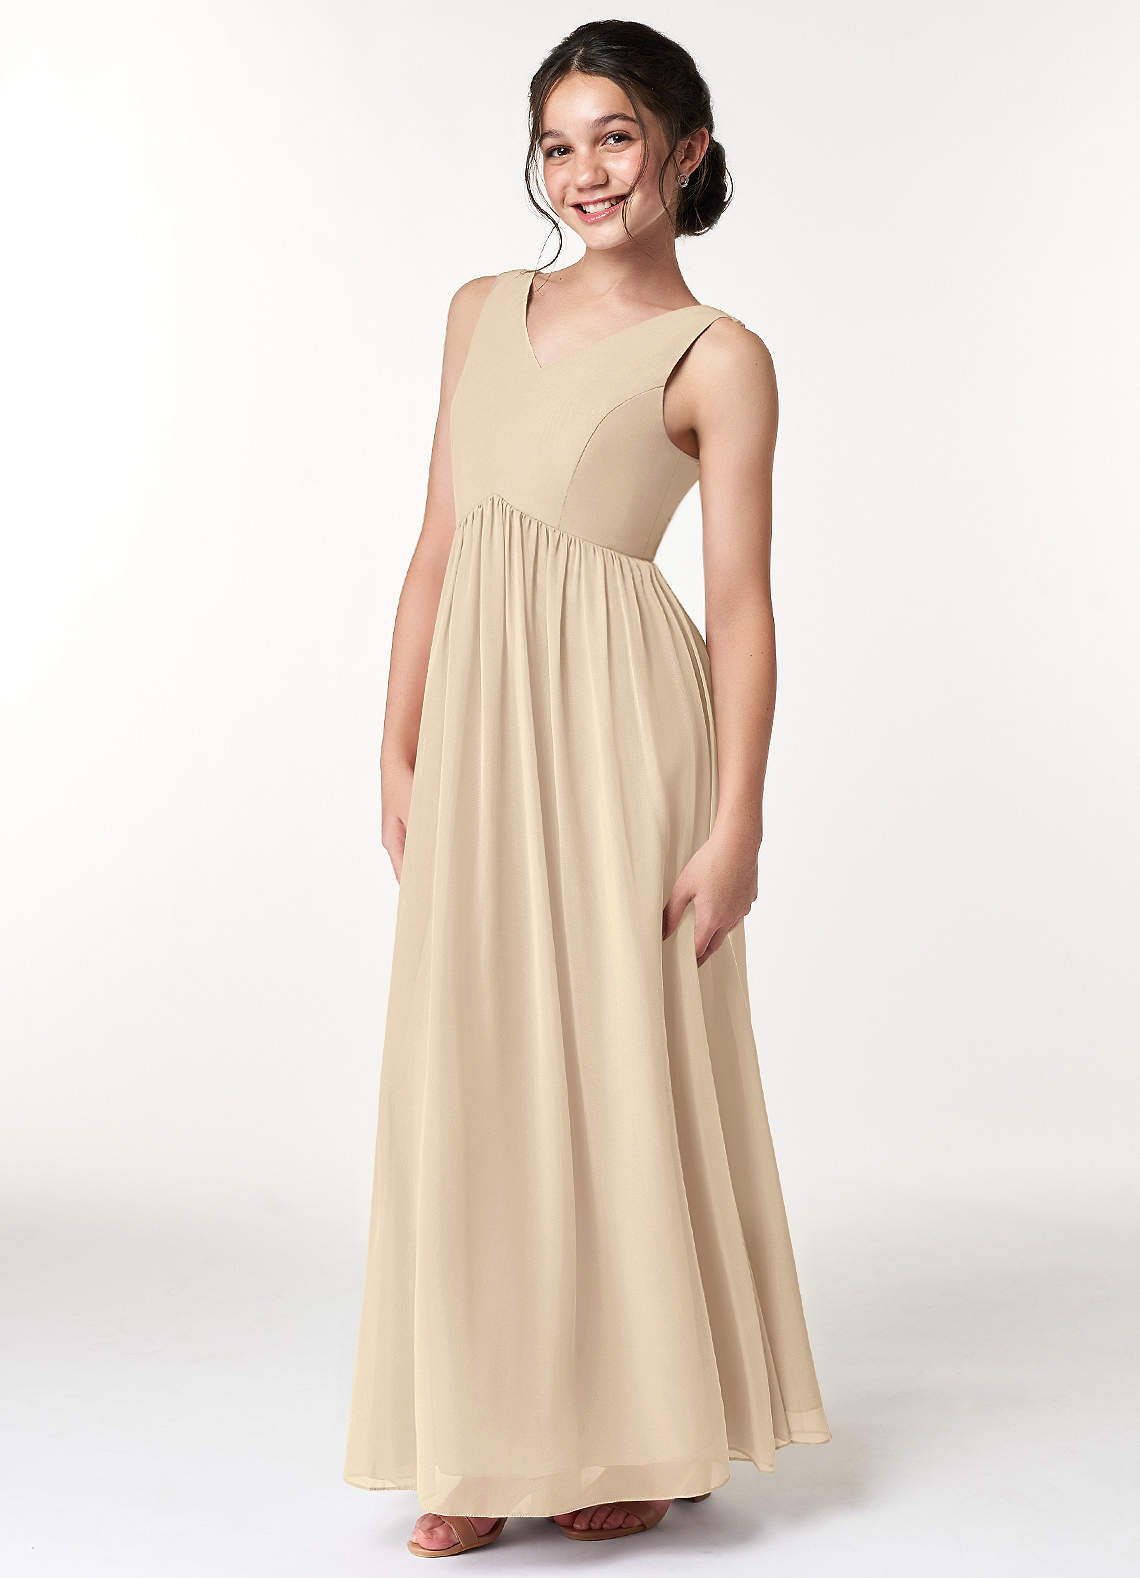 Azazie Oceana A-Line Pleated Chiffon Floor-Length Junior Bridesmaid Dress image1